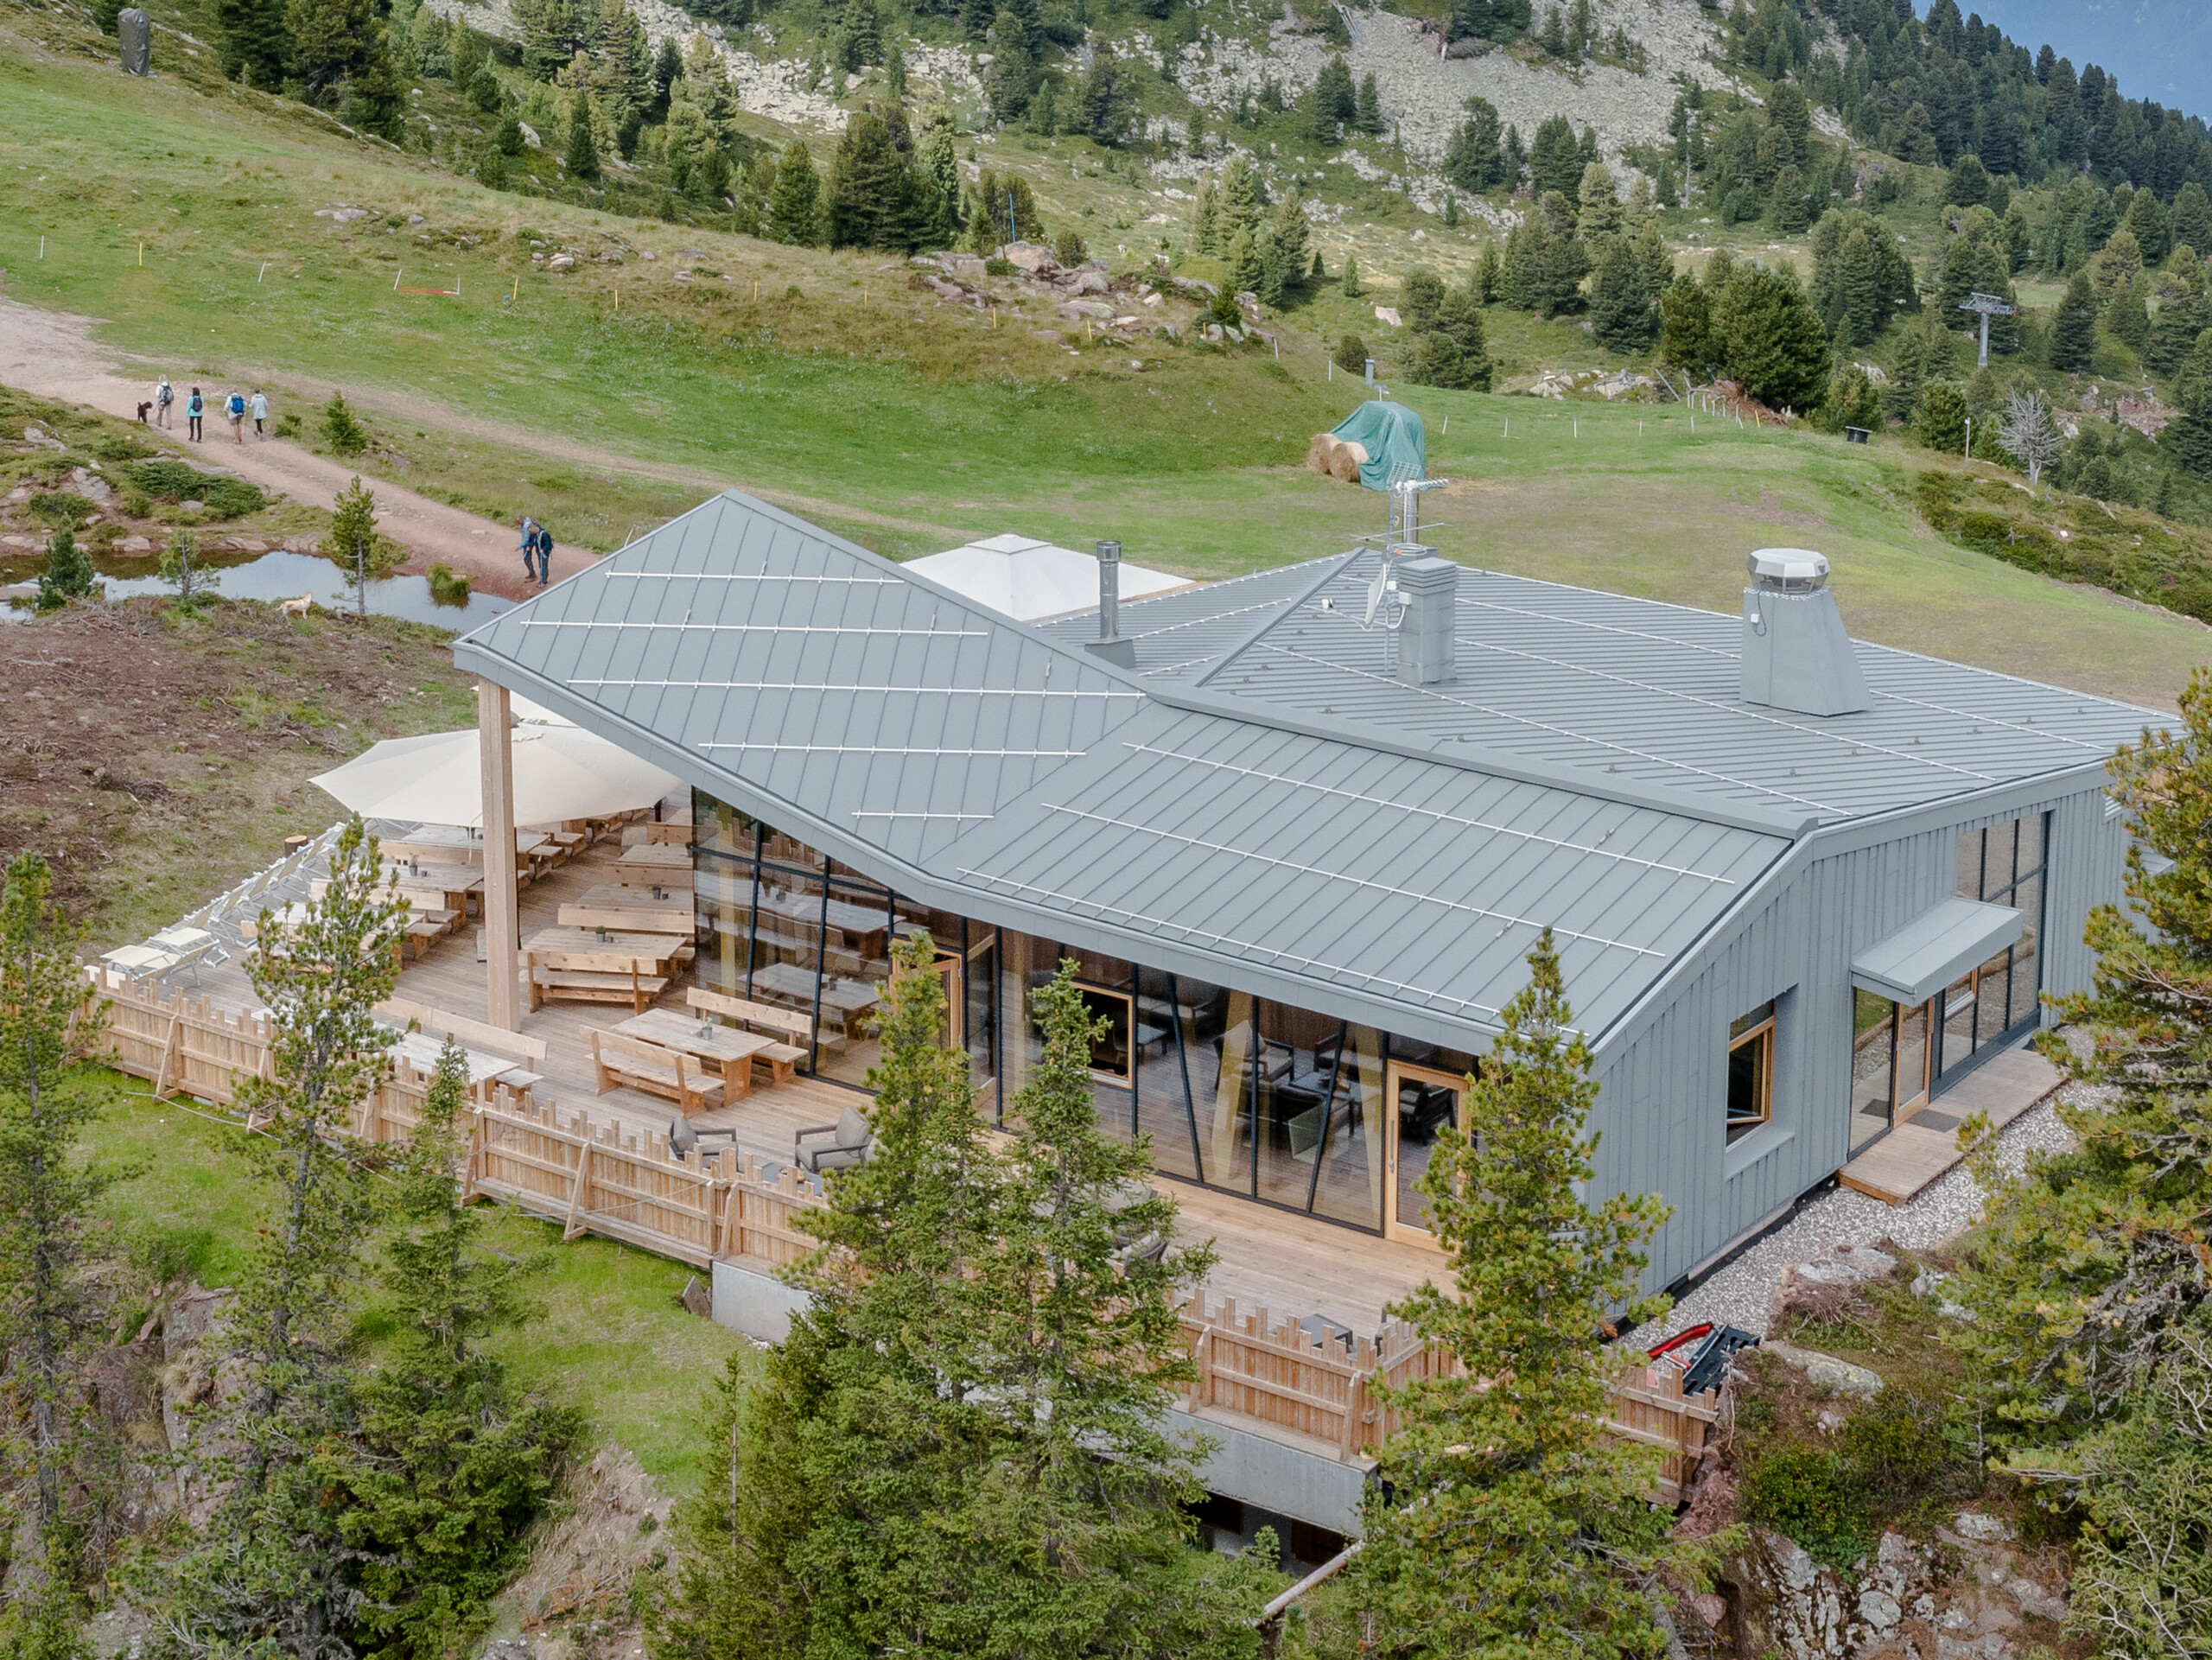 Il rifugio "Lo Chalet" sull’Alpe Cermis a 2.170m. com rivestimento in Prefalz PREFA per tetto e facciata